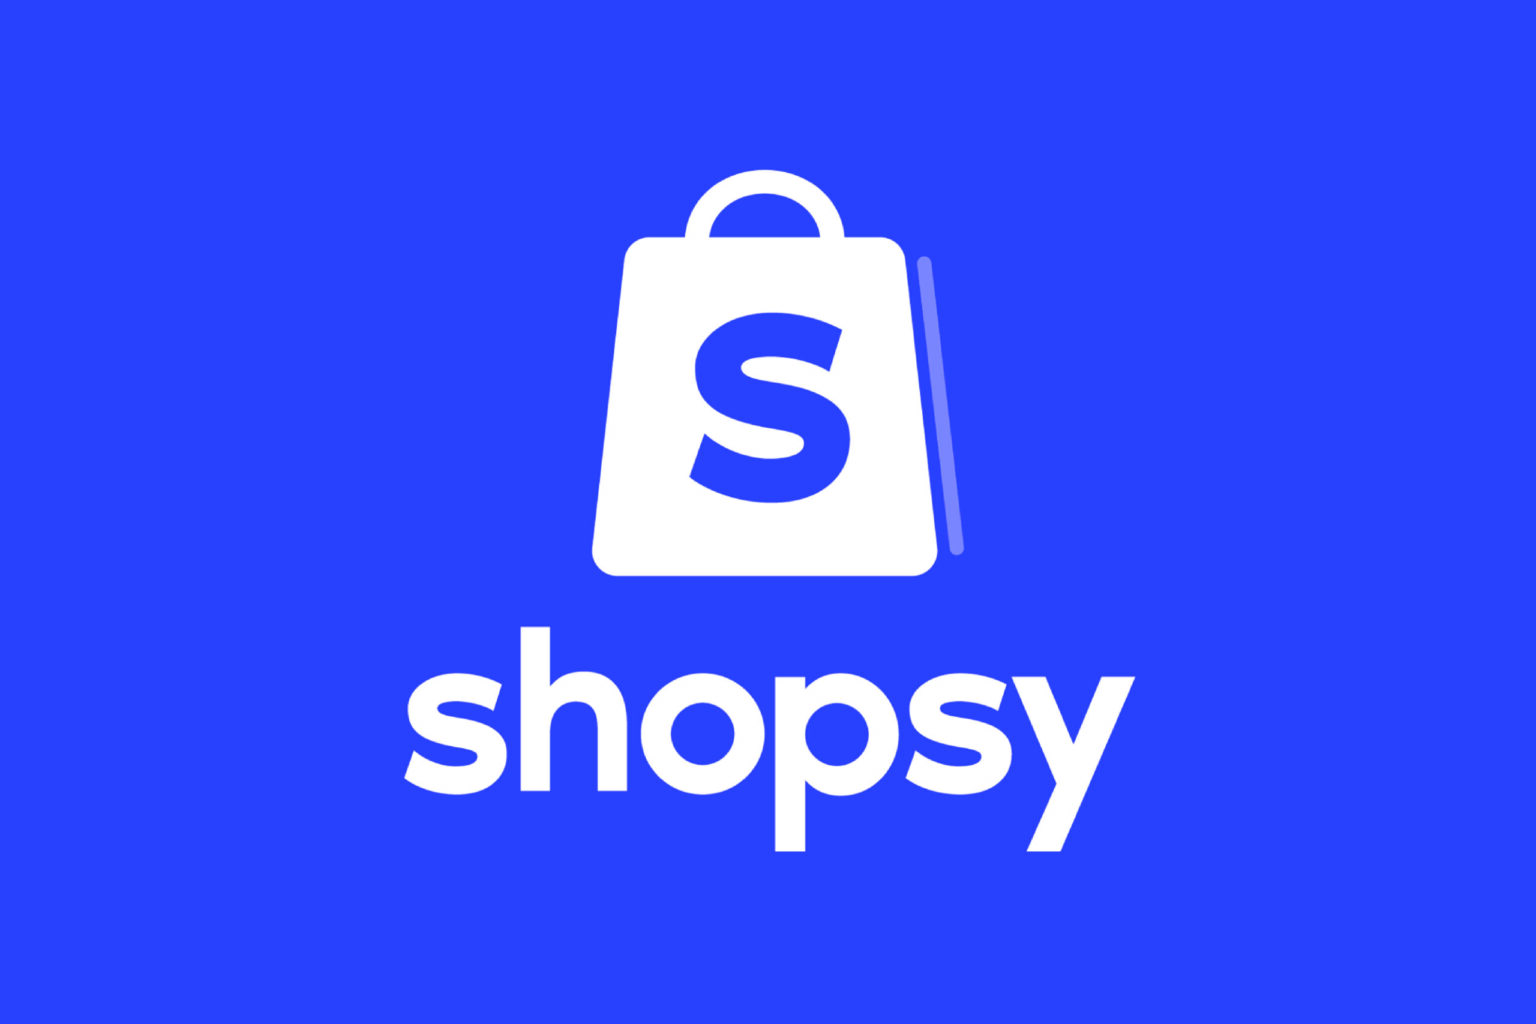 Flipkart's Shopsy launches zero commission marketplace - ChannelX